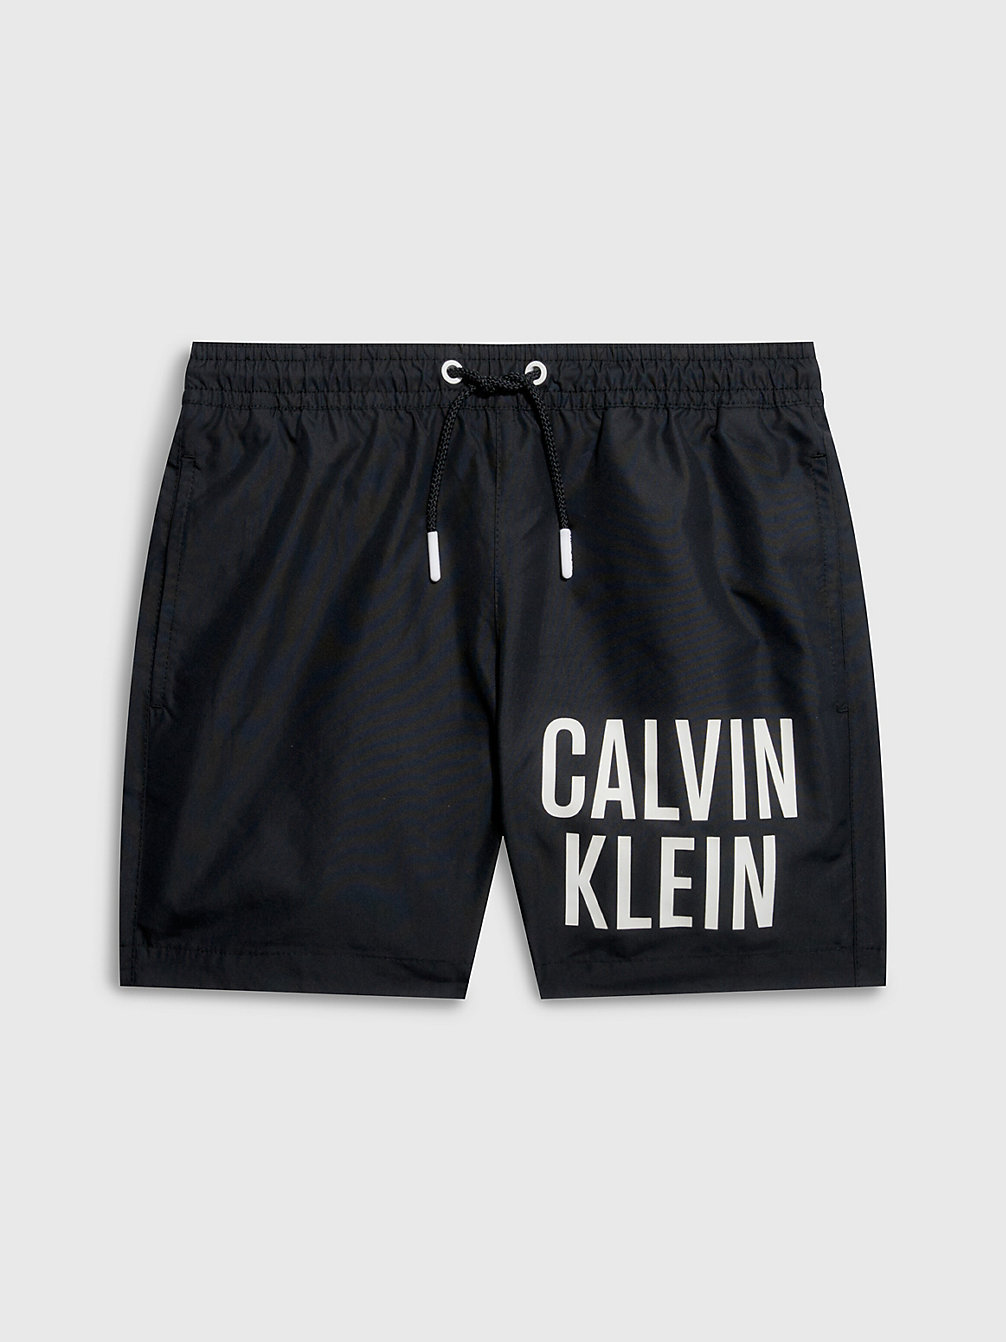 PVH BLACK > Jongenszwemshort - Intense Power > undefined jongens - Calvin Klein